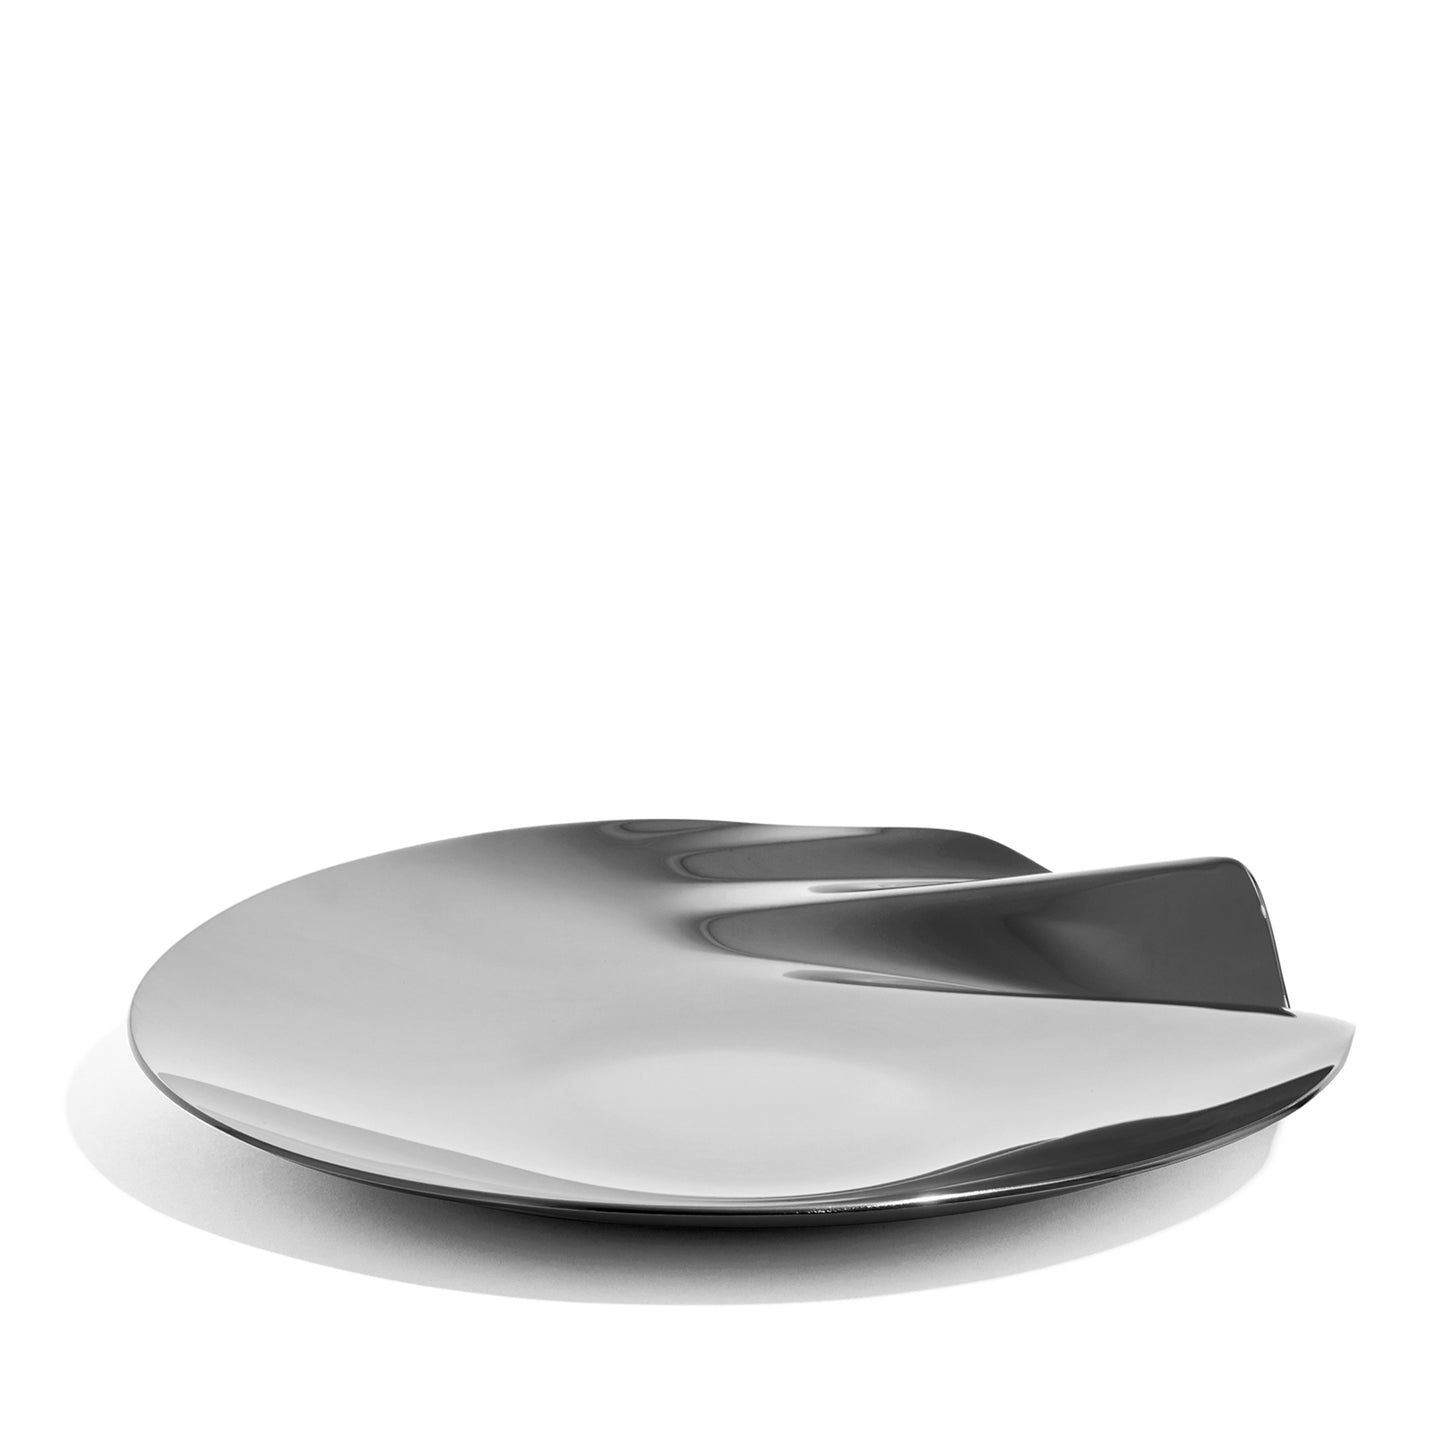 SERENITY PLATTER - Medium Ø25cm / Silver